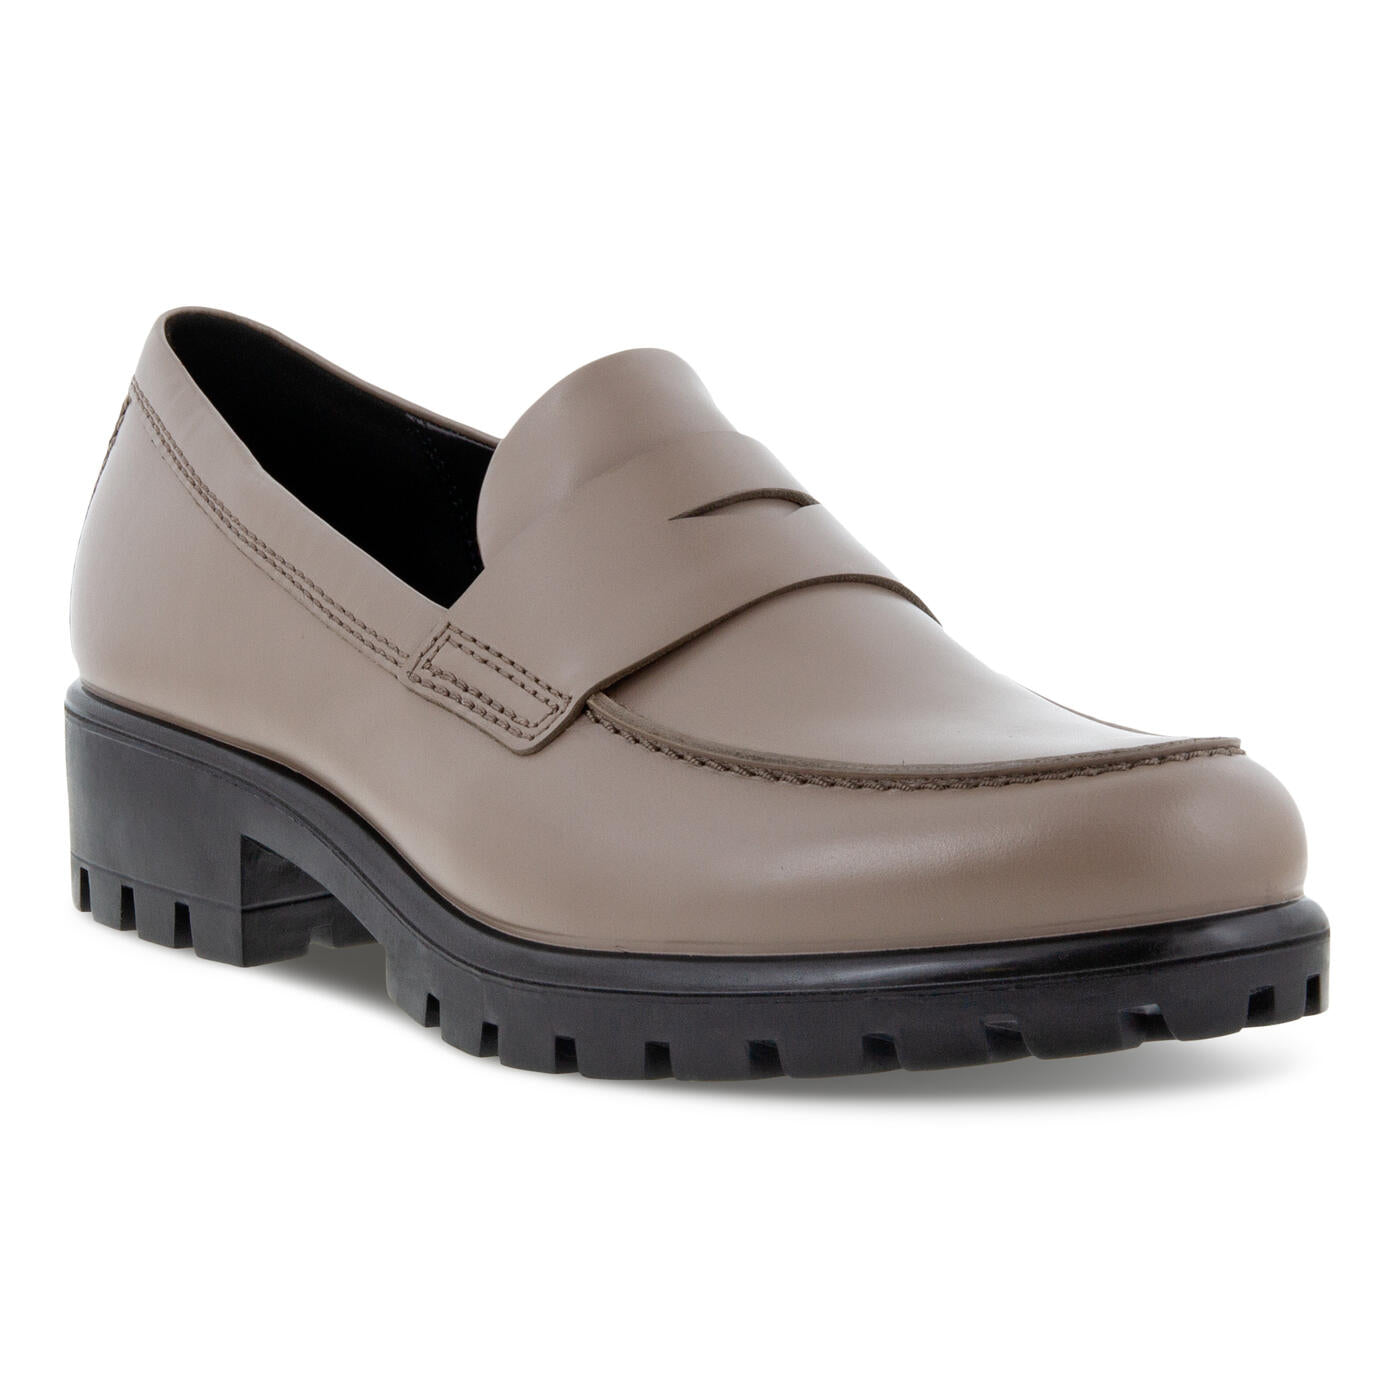 Ecco Women's Modtray Loafer Black 49001301001 – Orleans Shoe Co.